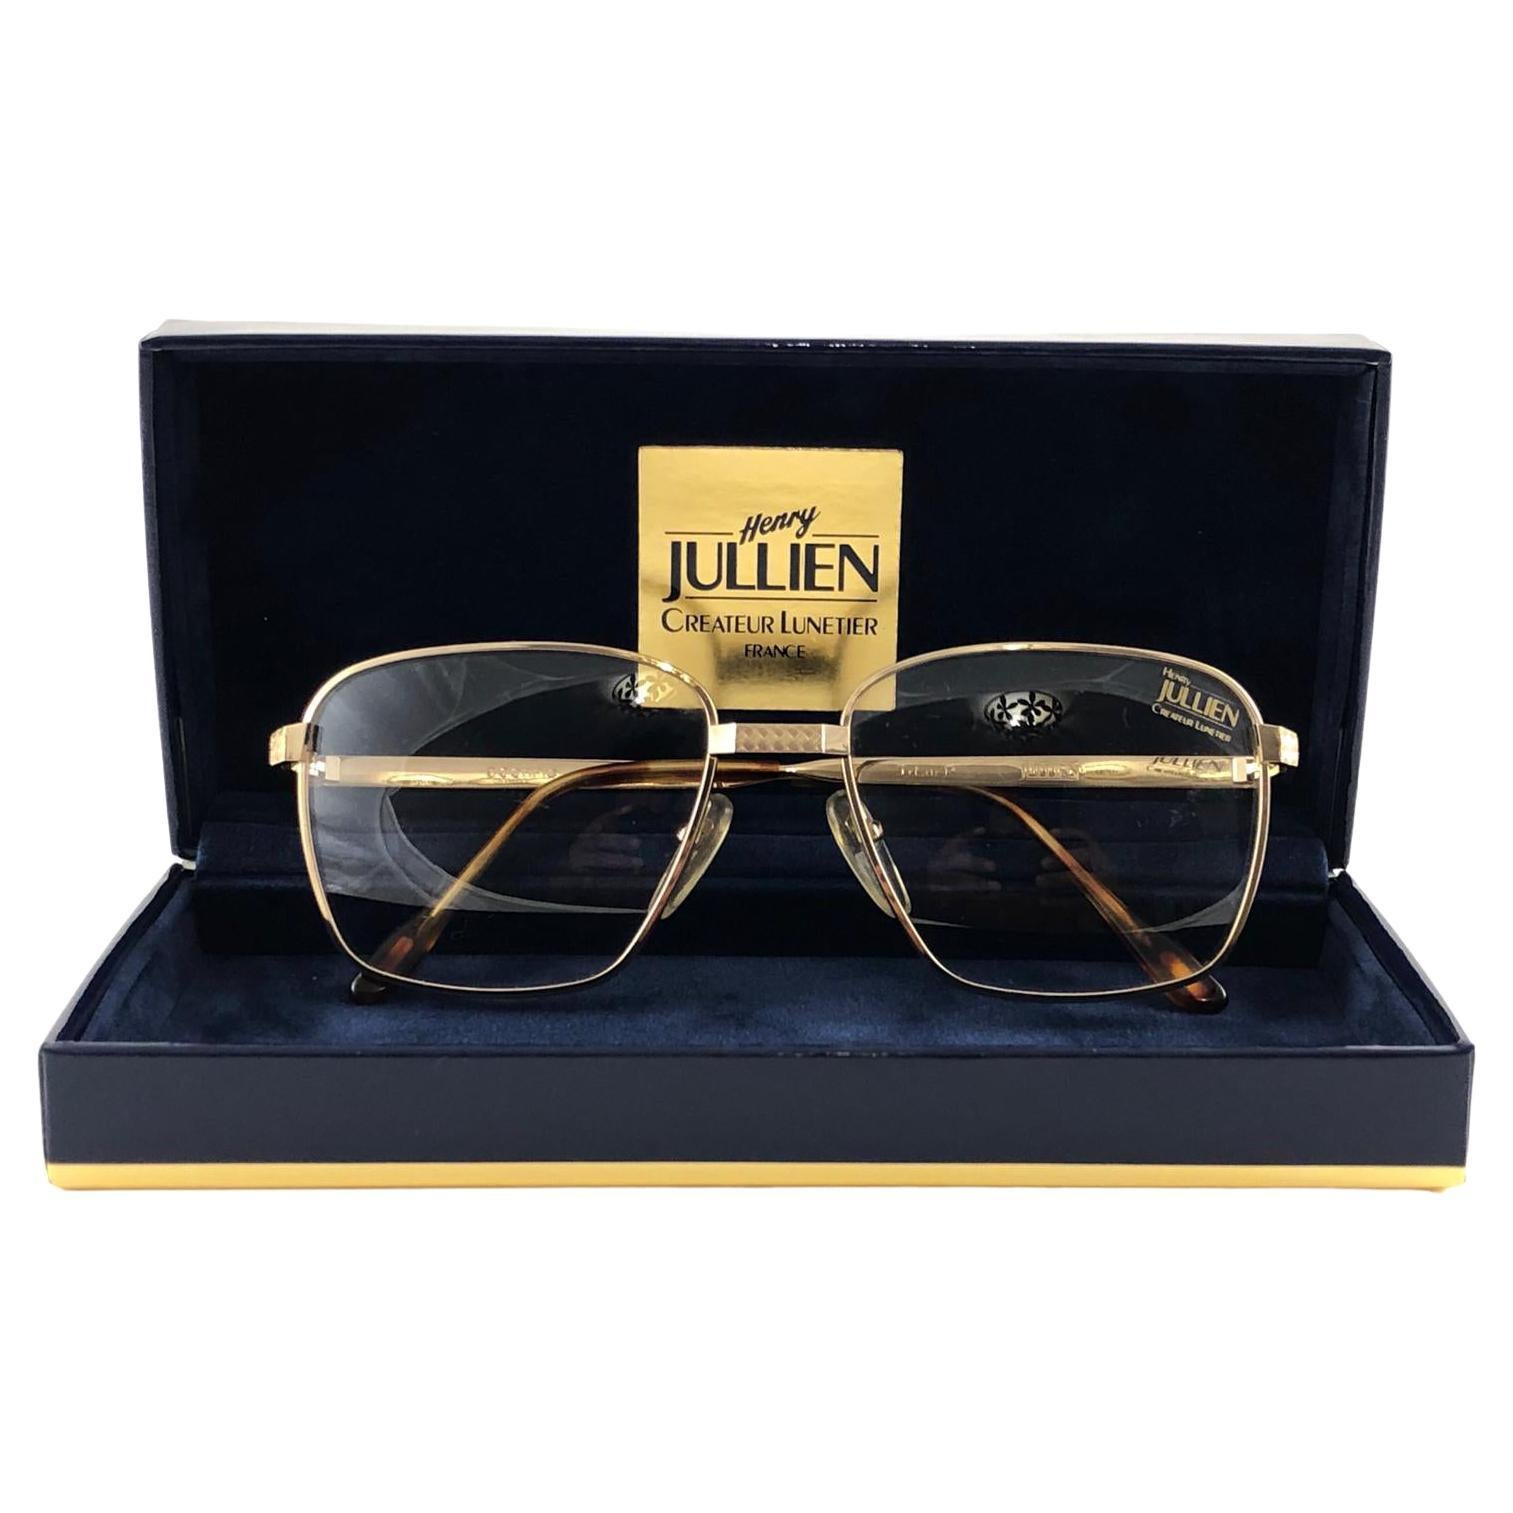 Henry Jullien - 4 For Sale on 1stDibs | henry jullien eyewear, henry jullien  frames, henry jullien sunglasses